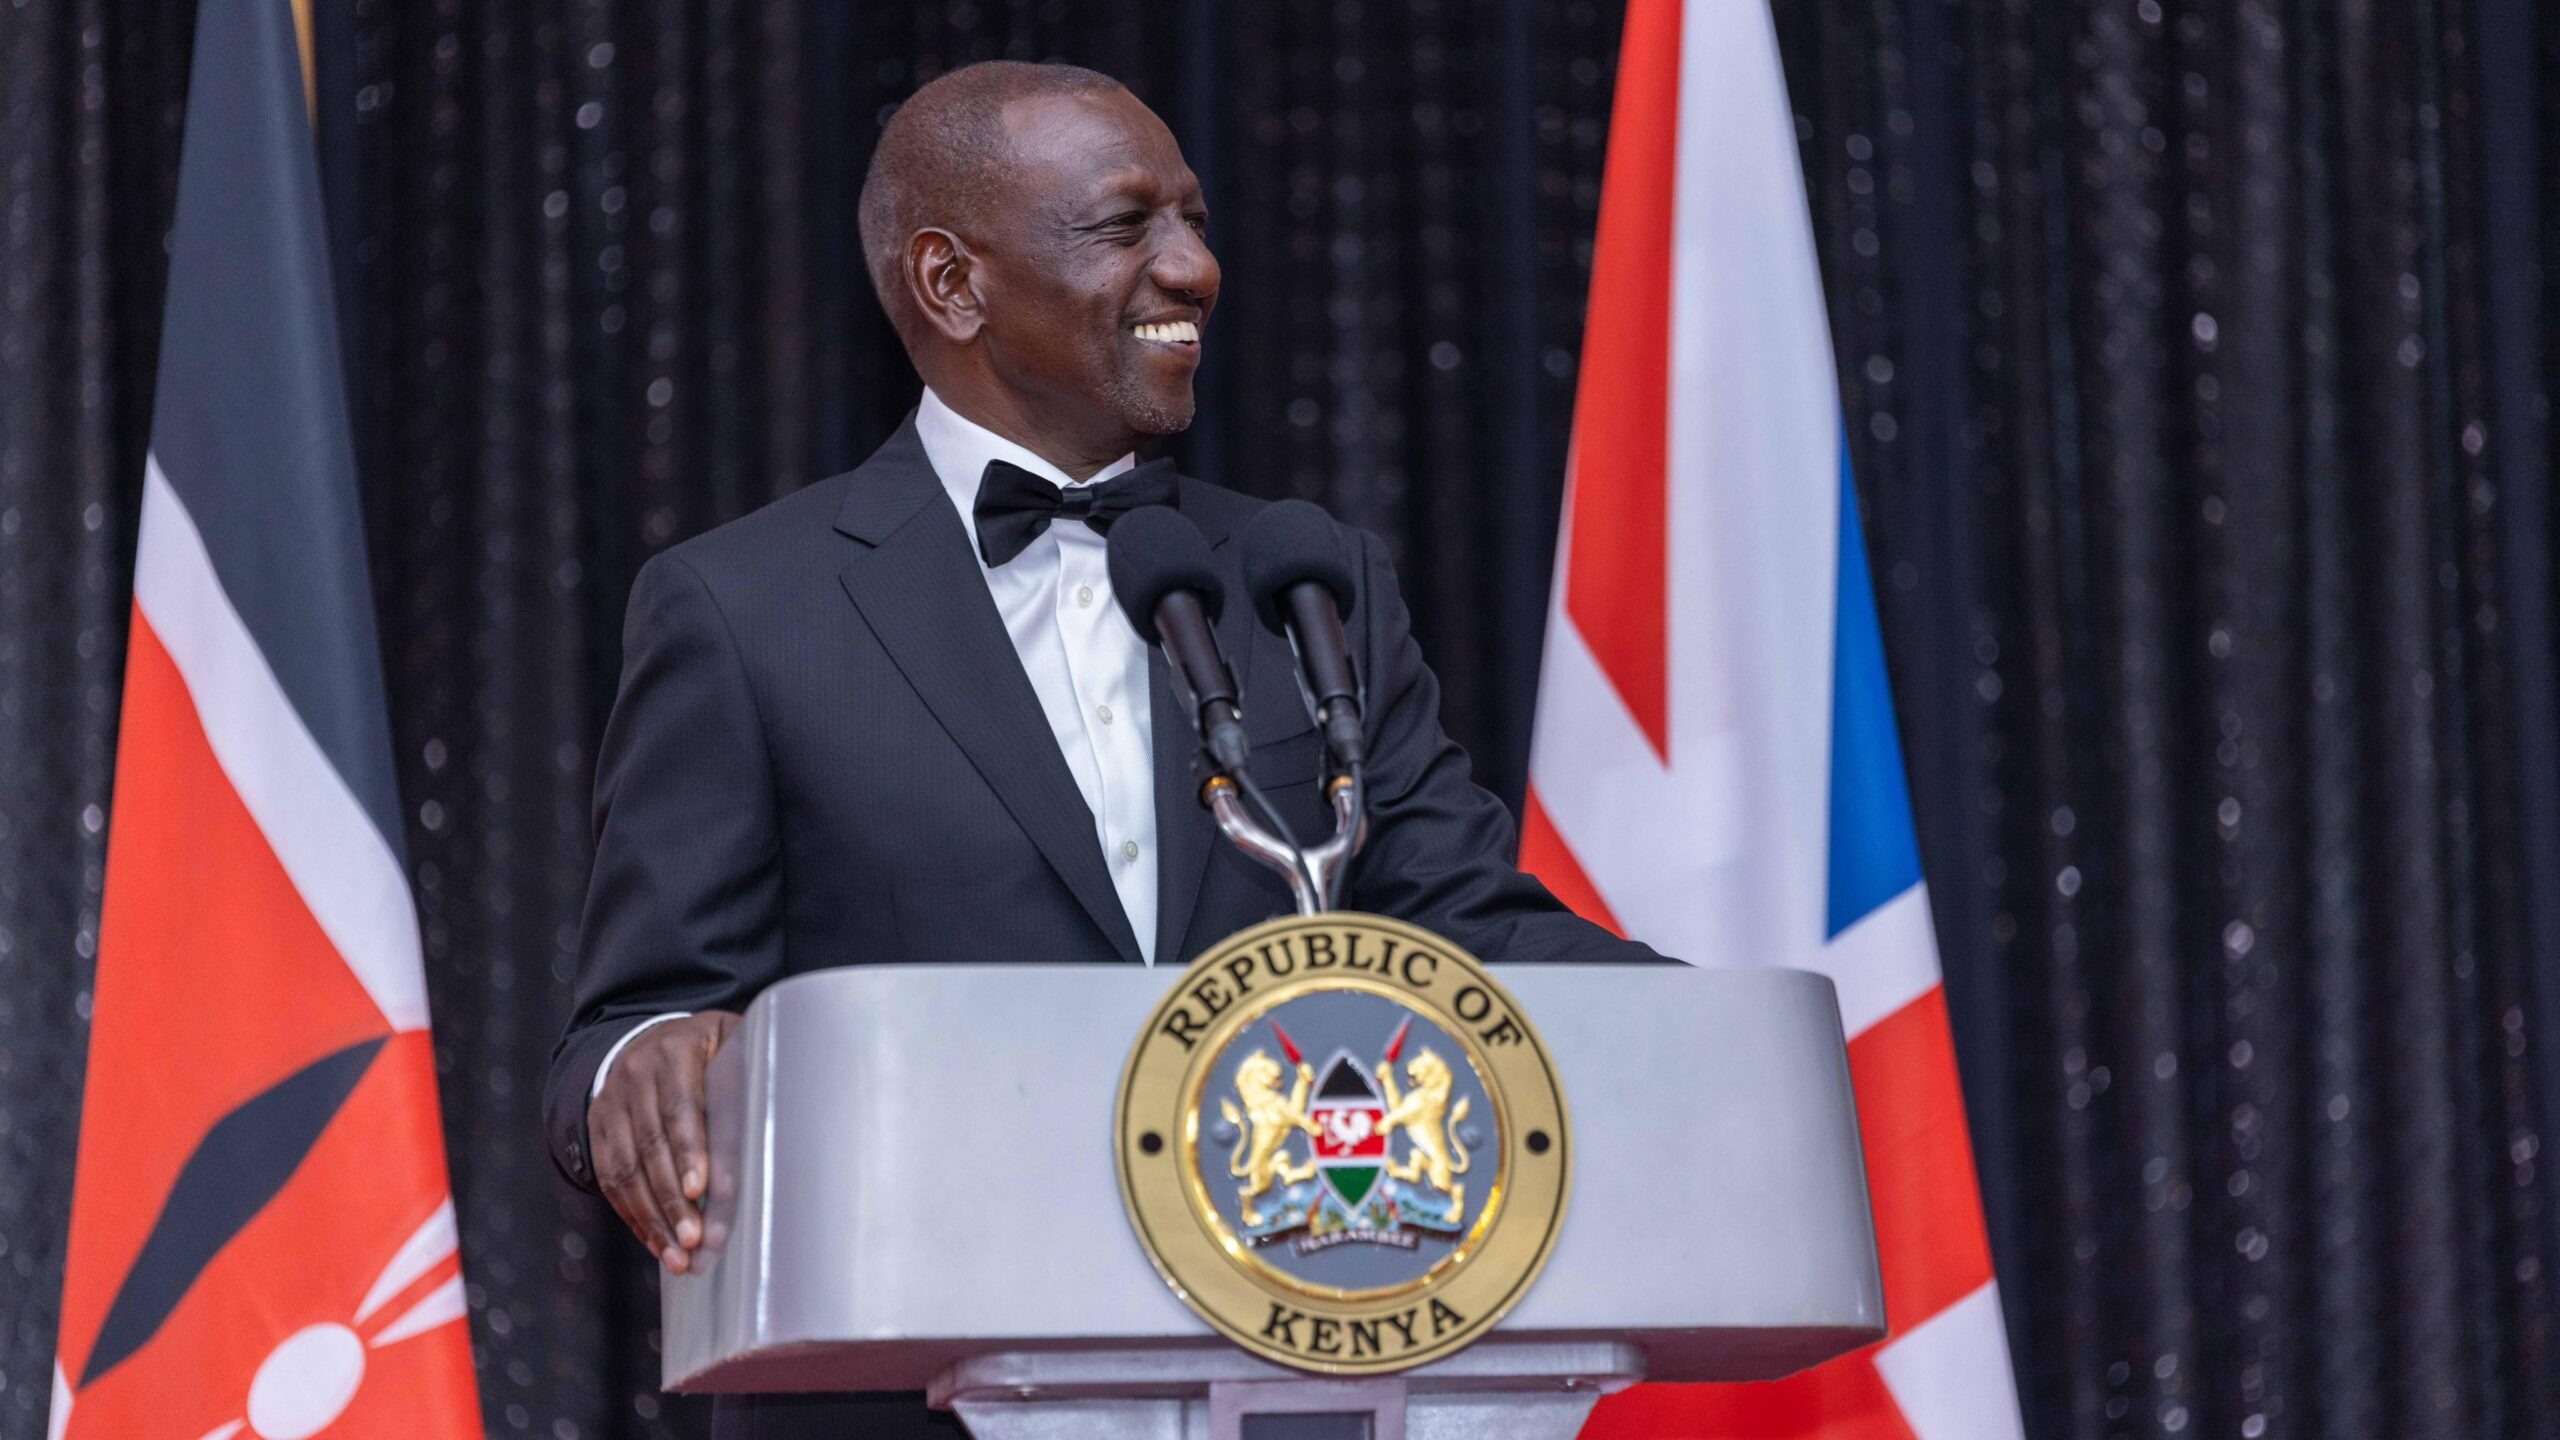 President Ruto's State of the Nation Address - FULL SPEECH